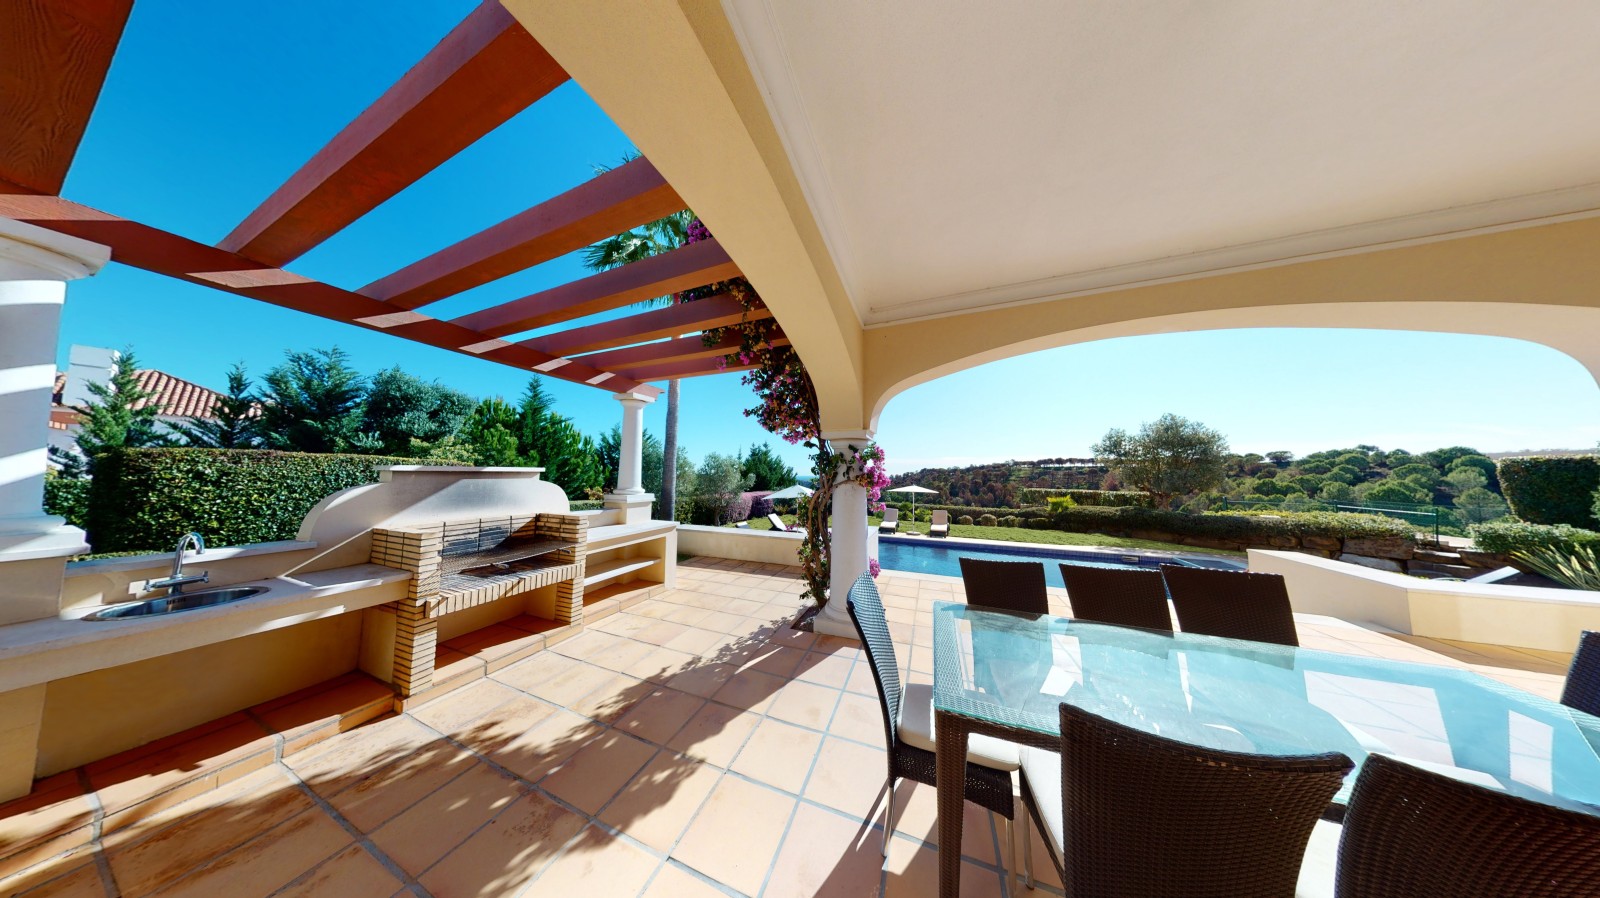 Moradia V4 com piscina, para venda em Vila Real de Santo Antonio, Algarve_215722